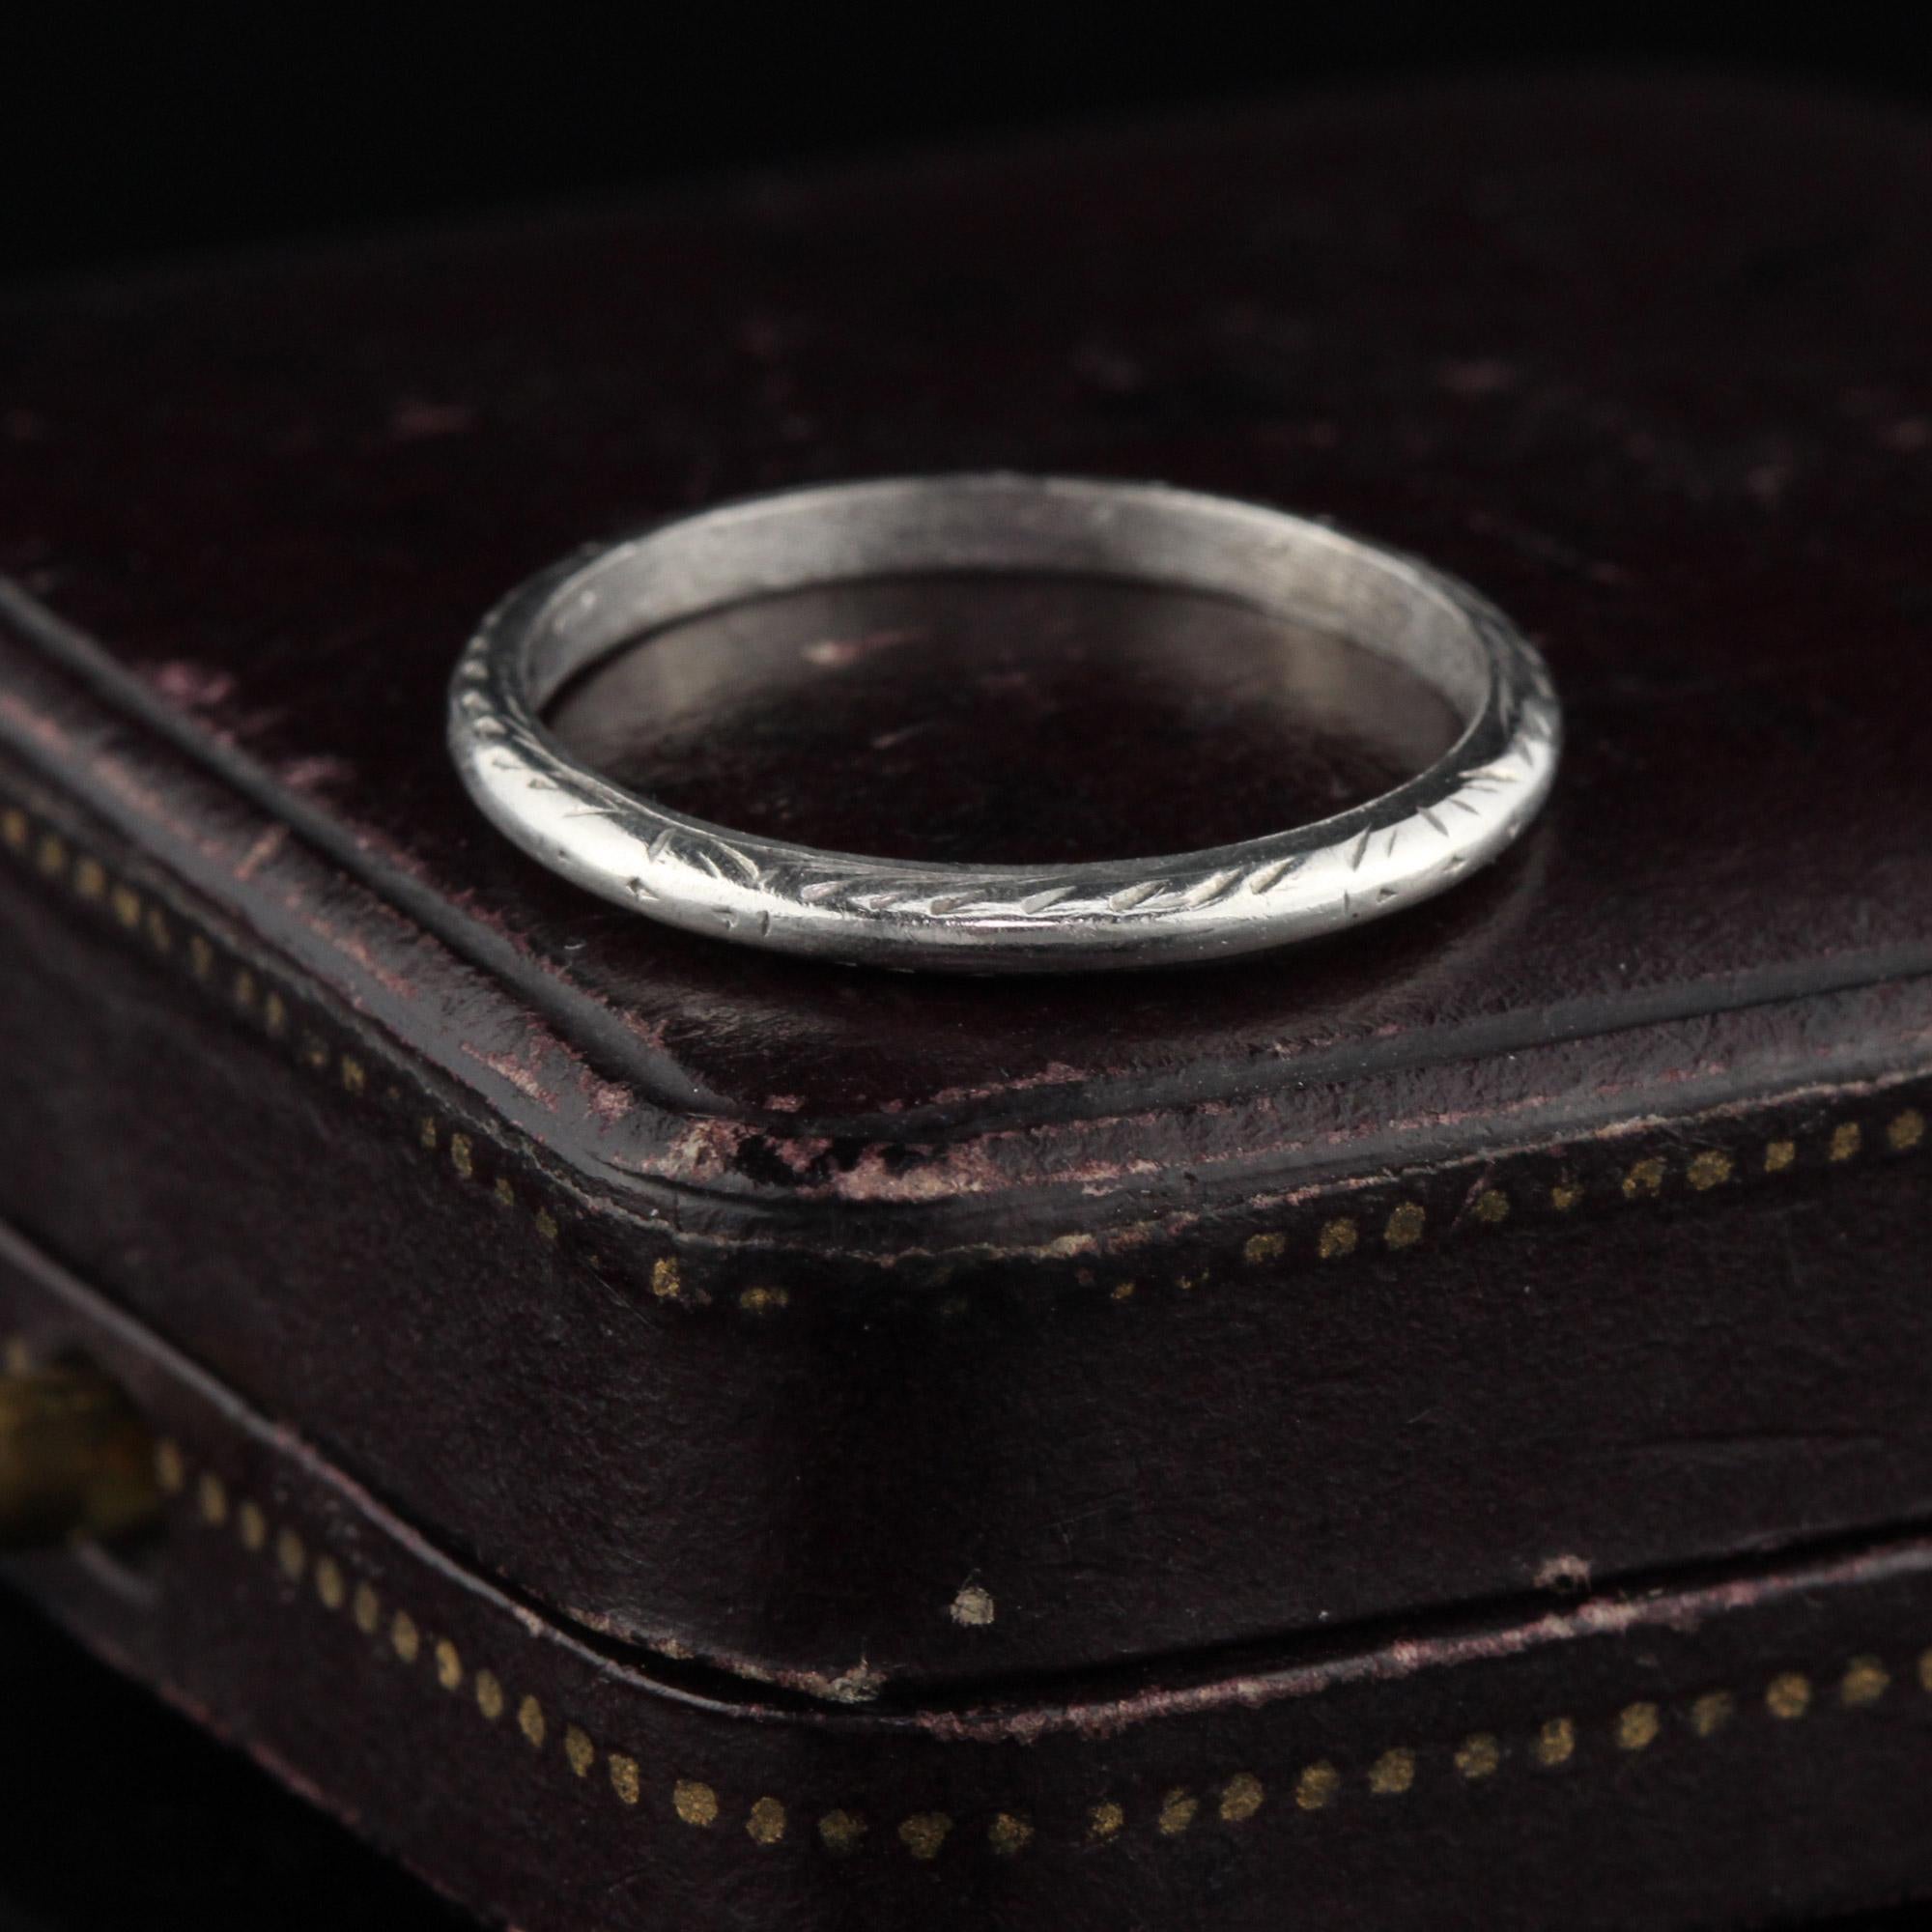 Elegantes antikes Band mit schönen Gravuren.

#R0111

Metall: Platin
 
Gewicht: 2,2 Gramm

Ringgröße: 5,75

Dieser Ring kann gegen eine Gebühr von $50 in der Größe angepasst werden!

*Bitte beachten Sie, dass wir keine Rücksendungen für Ringe in